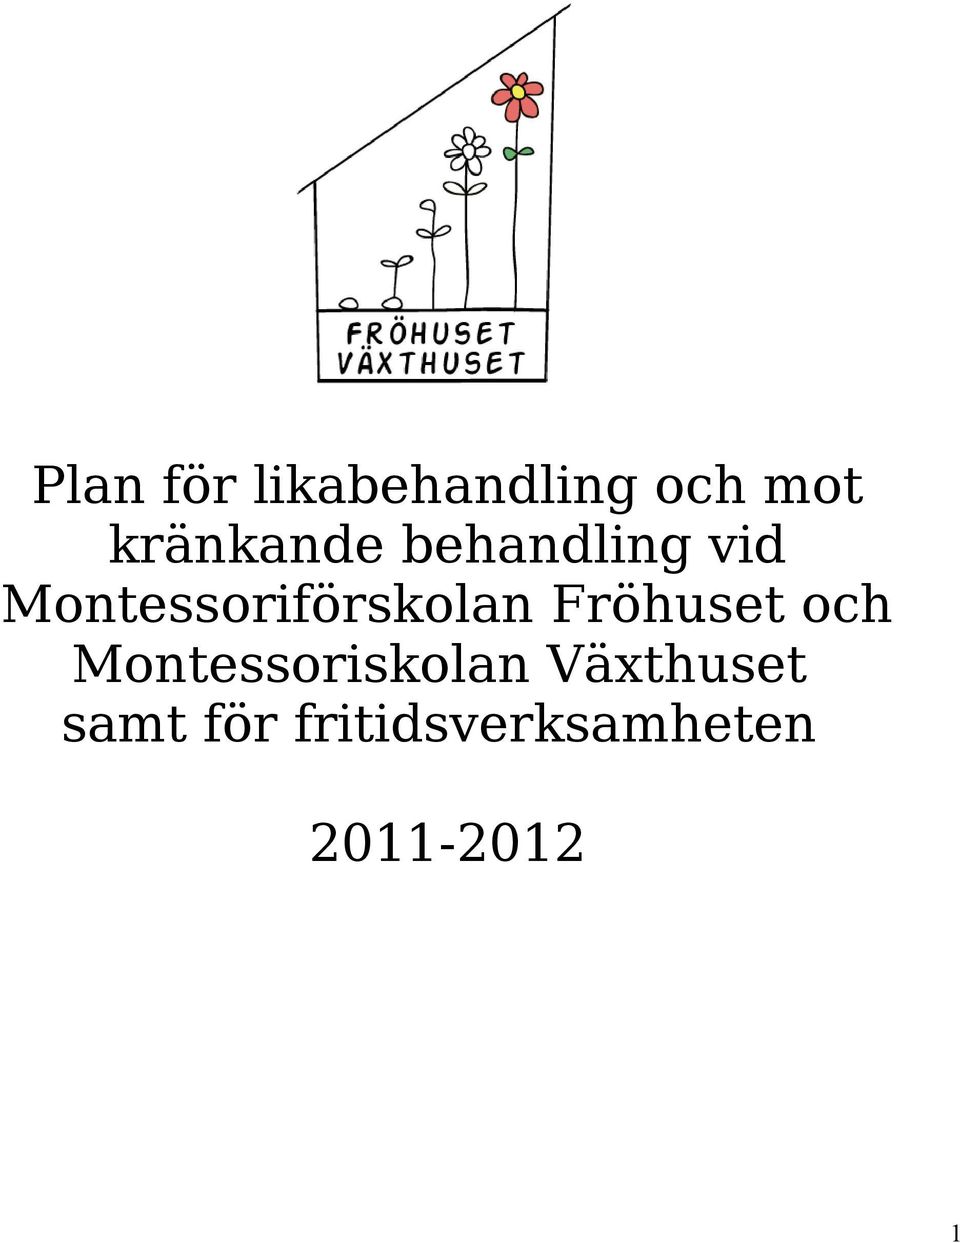 Montessoriförskolan Fröhuset och